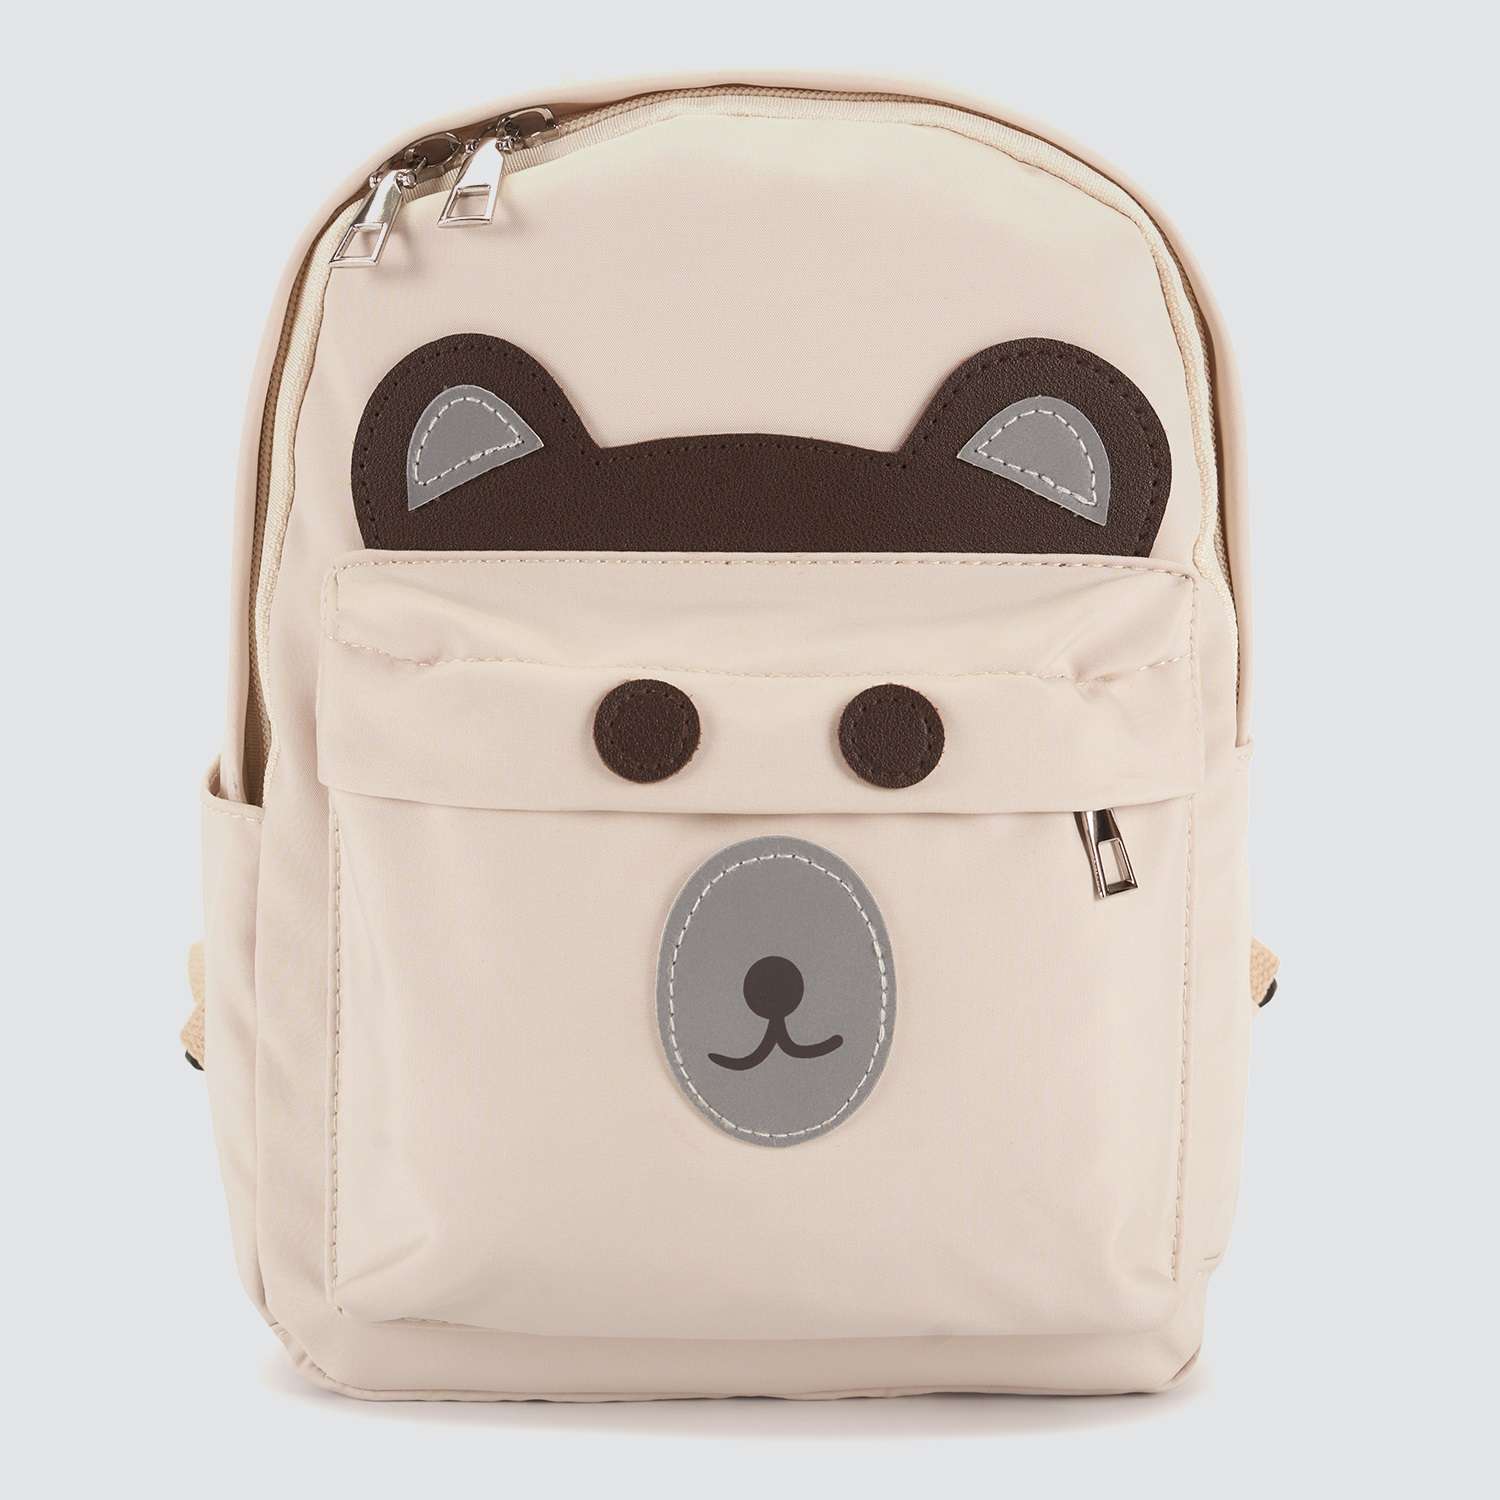 Детский рюкзак Journey 26801 бежевый медвежонок - фото 2